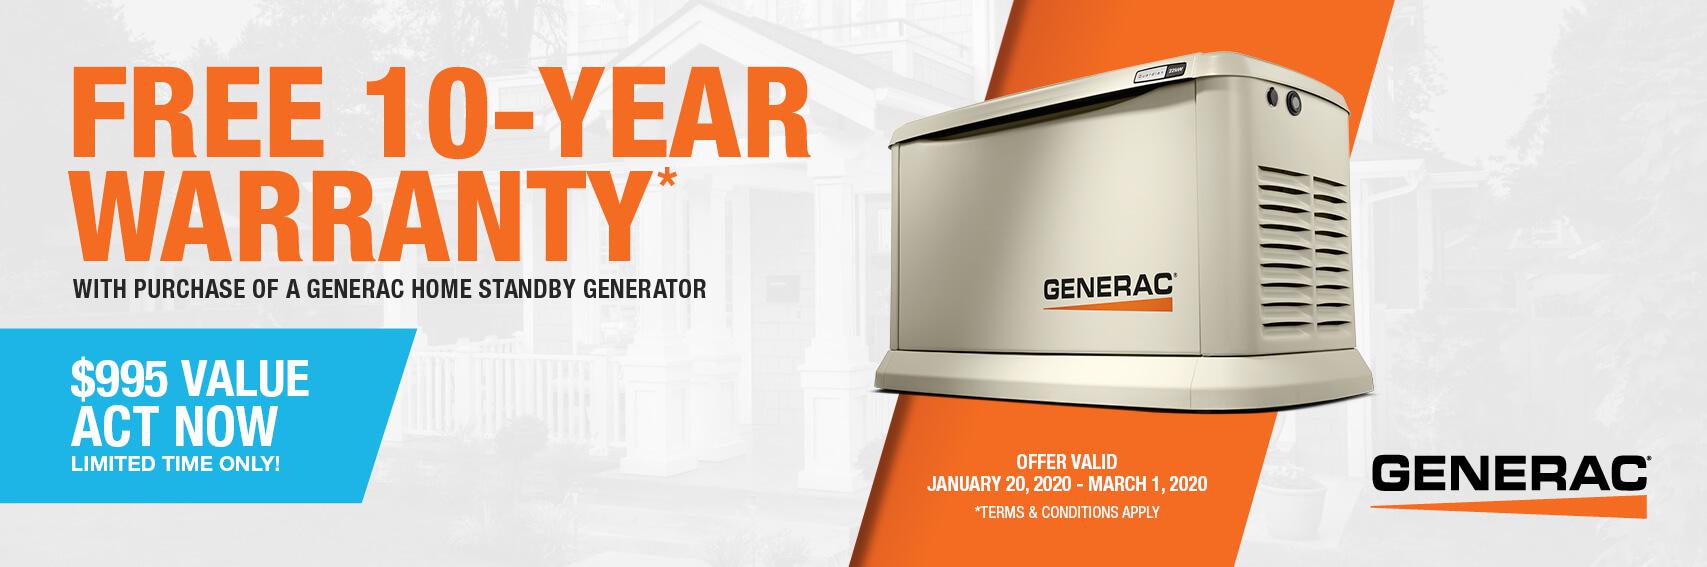 Homestandby Generator Deal | Warranty Offer | Generac Dealer | Harwich Port, MA